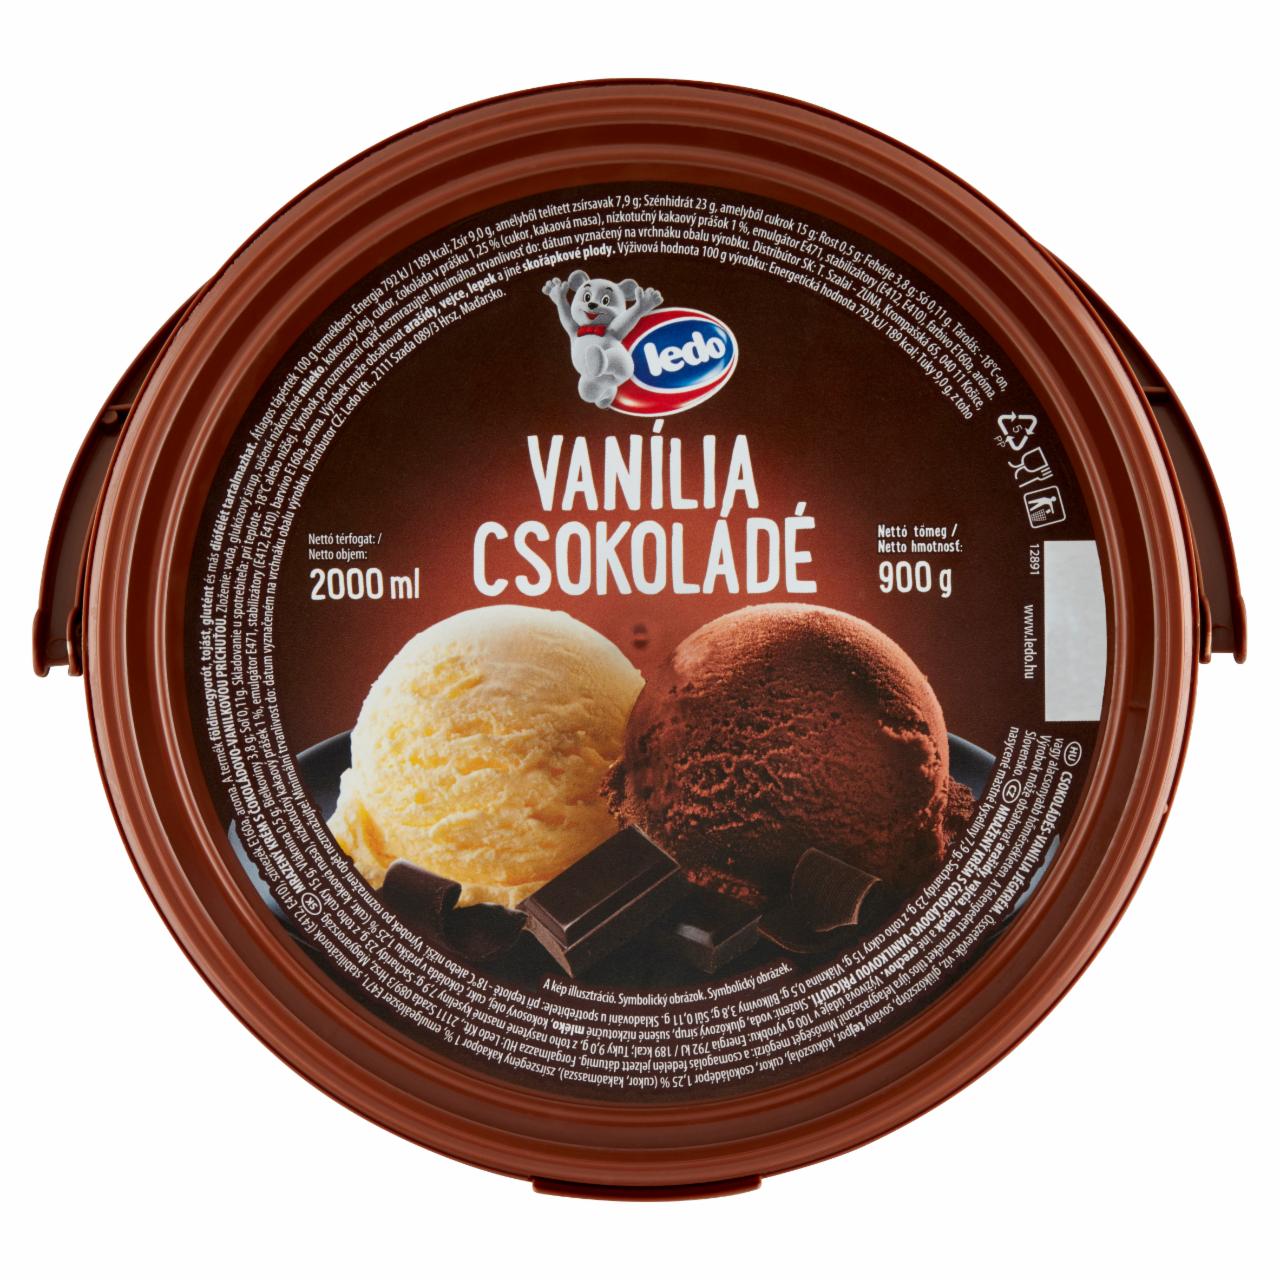 Képek - Ledo csokoládés-vanília jégkrém 2000 ml